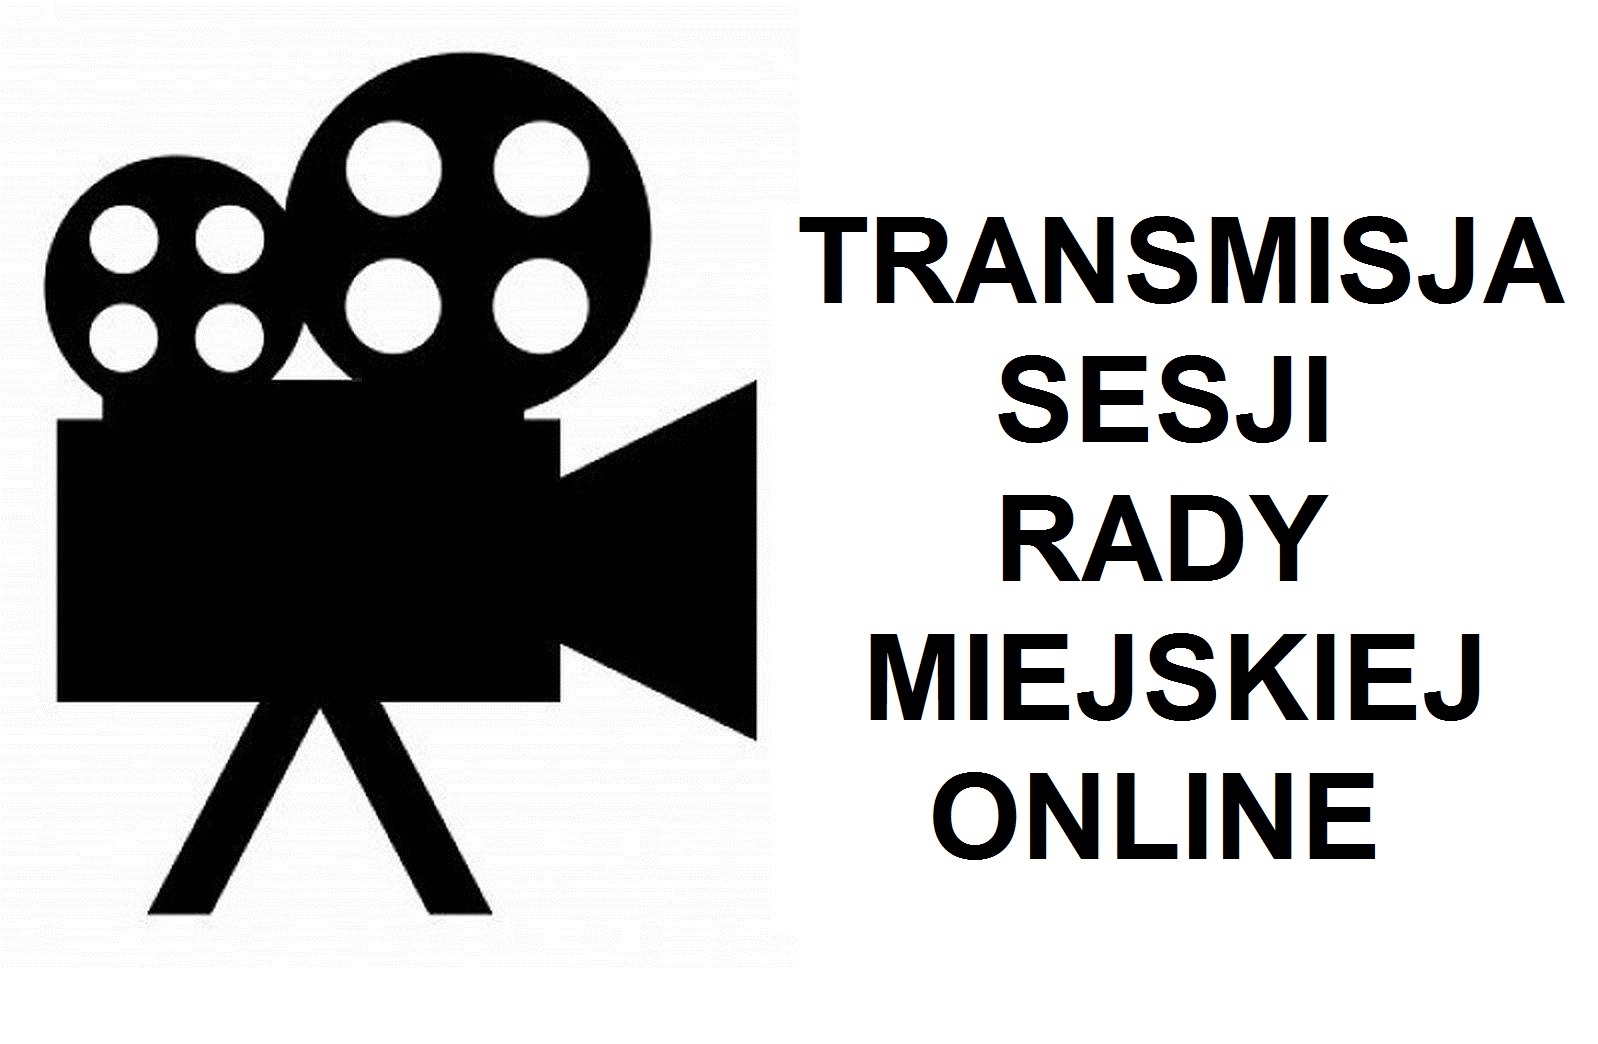 XXX Sesja Rady Miejskiej VIII kadencji - Transmisja Online